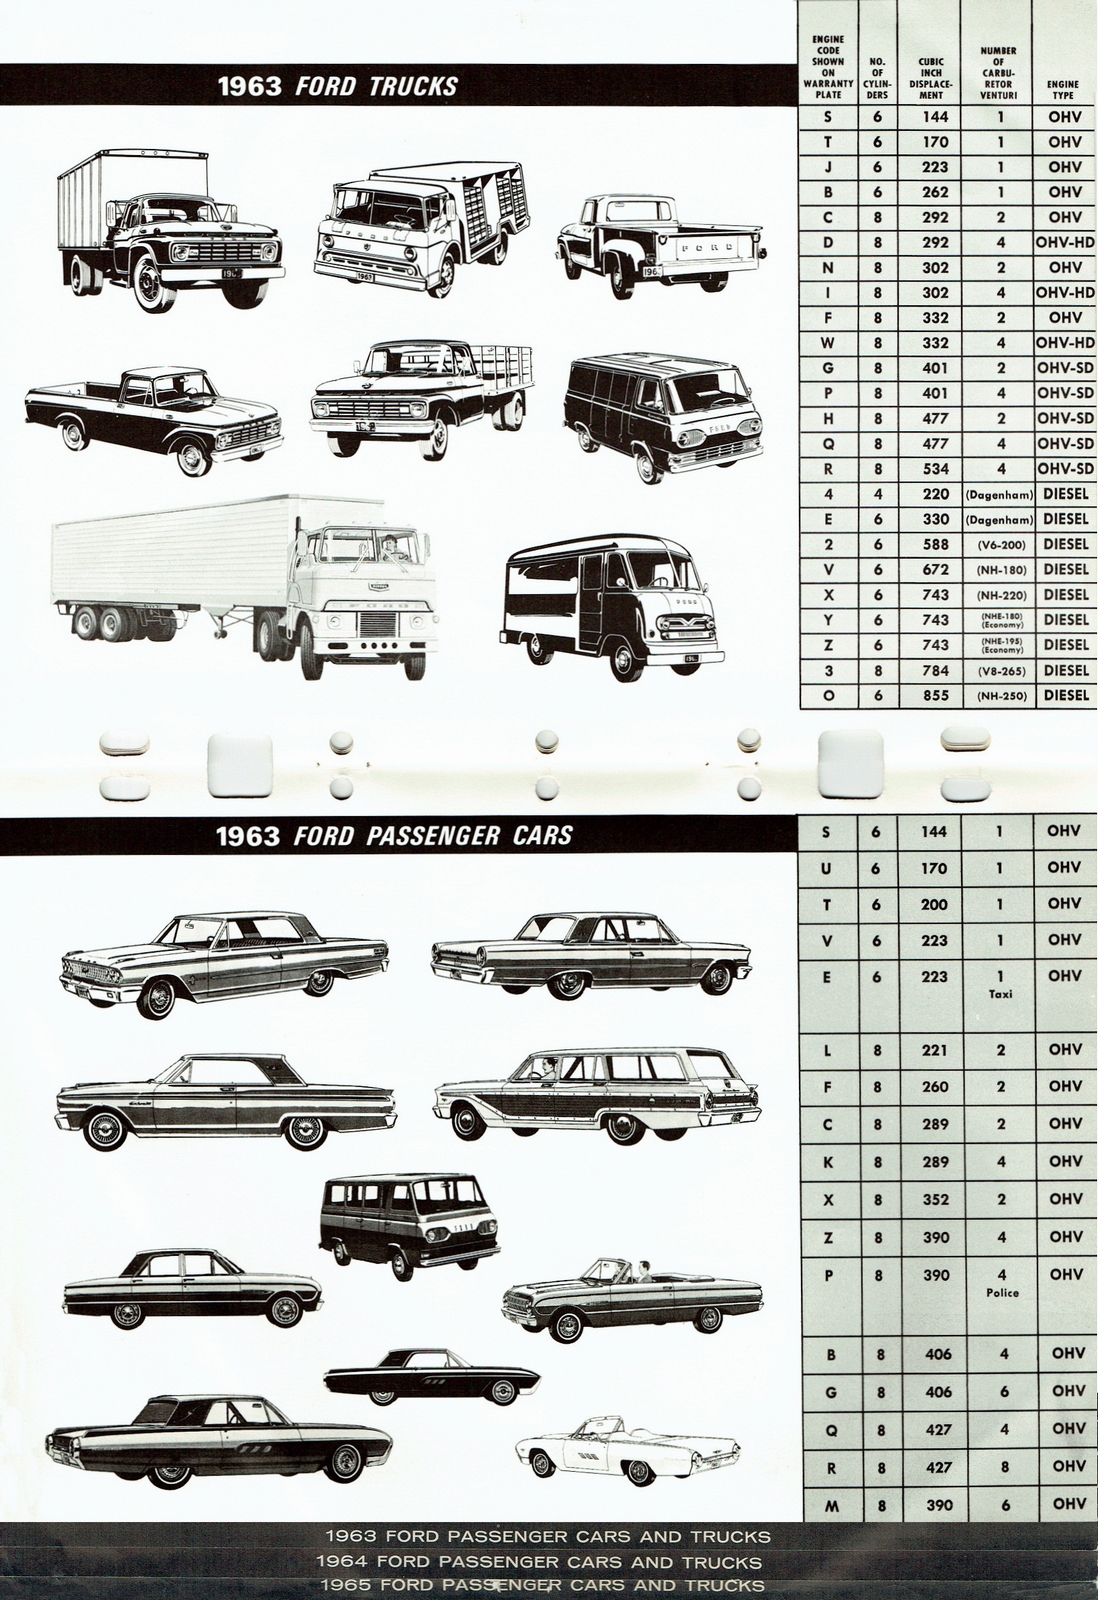 n_1956-1965 Ford Model & Engine ID Guide-10-11.jpg